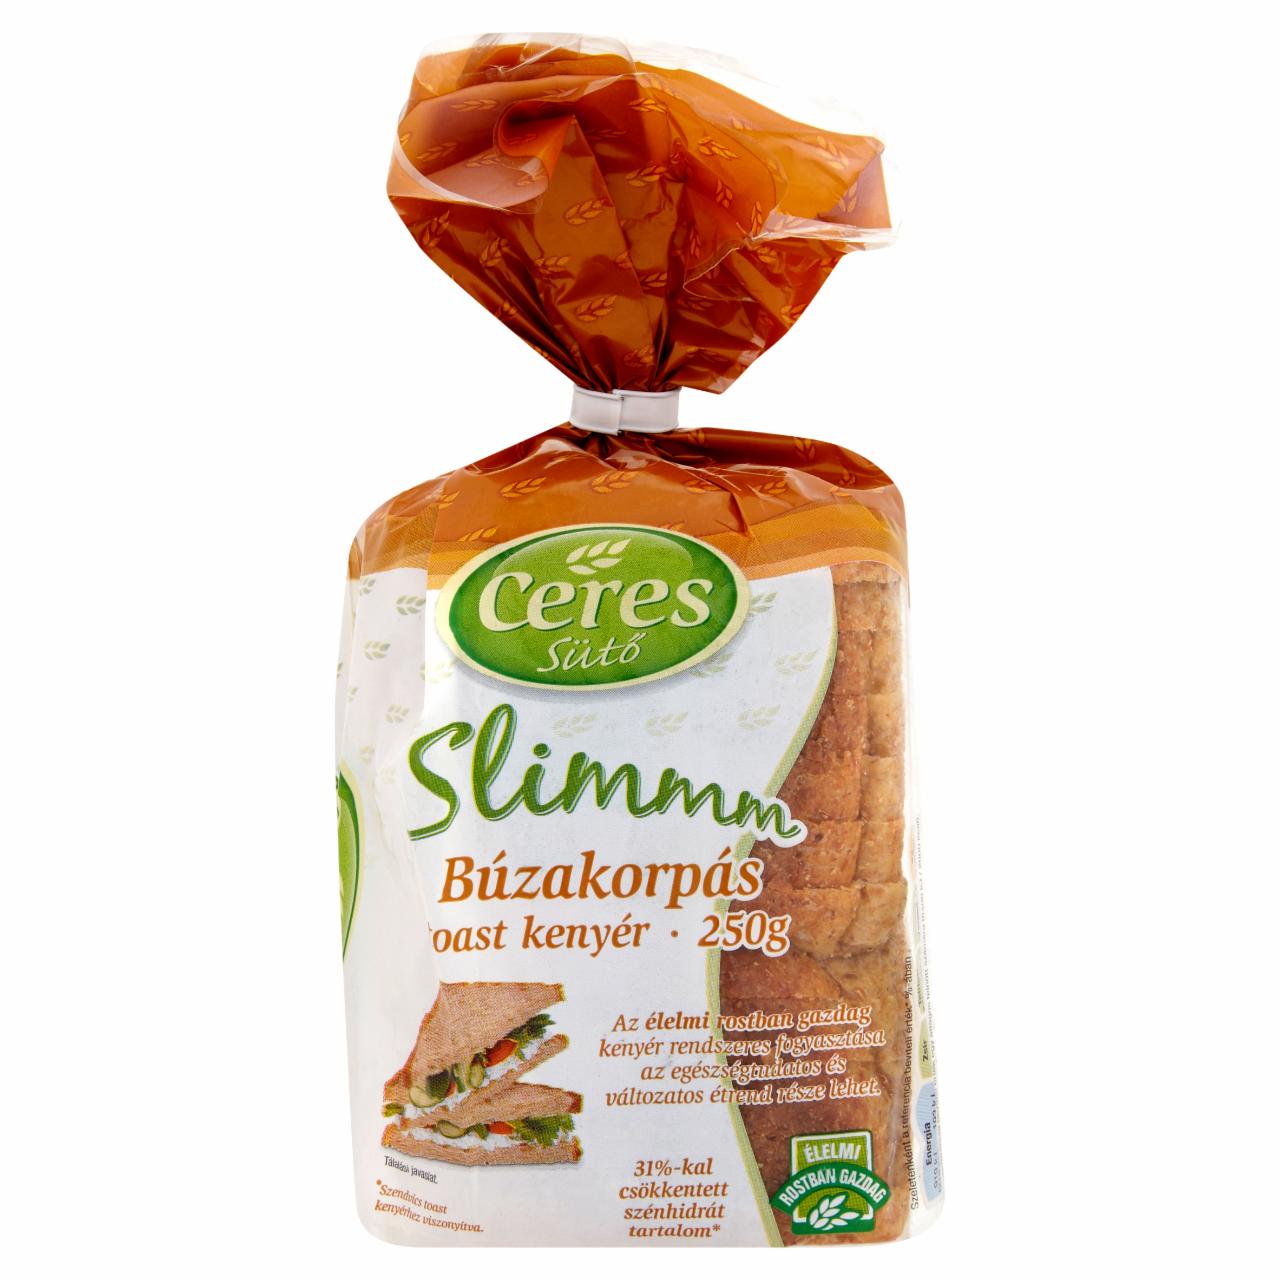 Képek - Ceres Slimmm szénhidrátcsökkentett búzakorpás toast kenyér 250 g